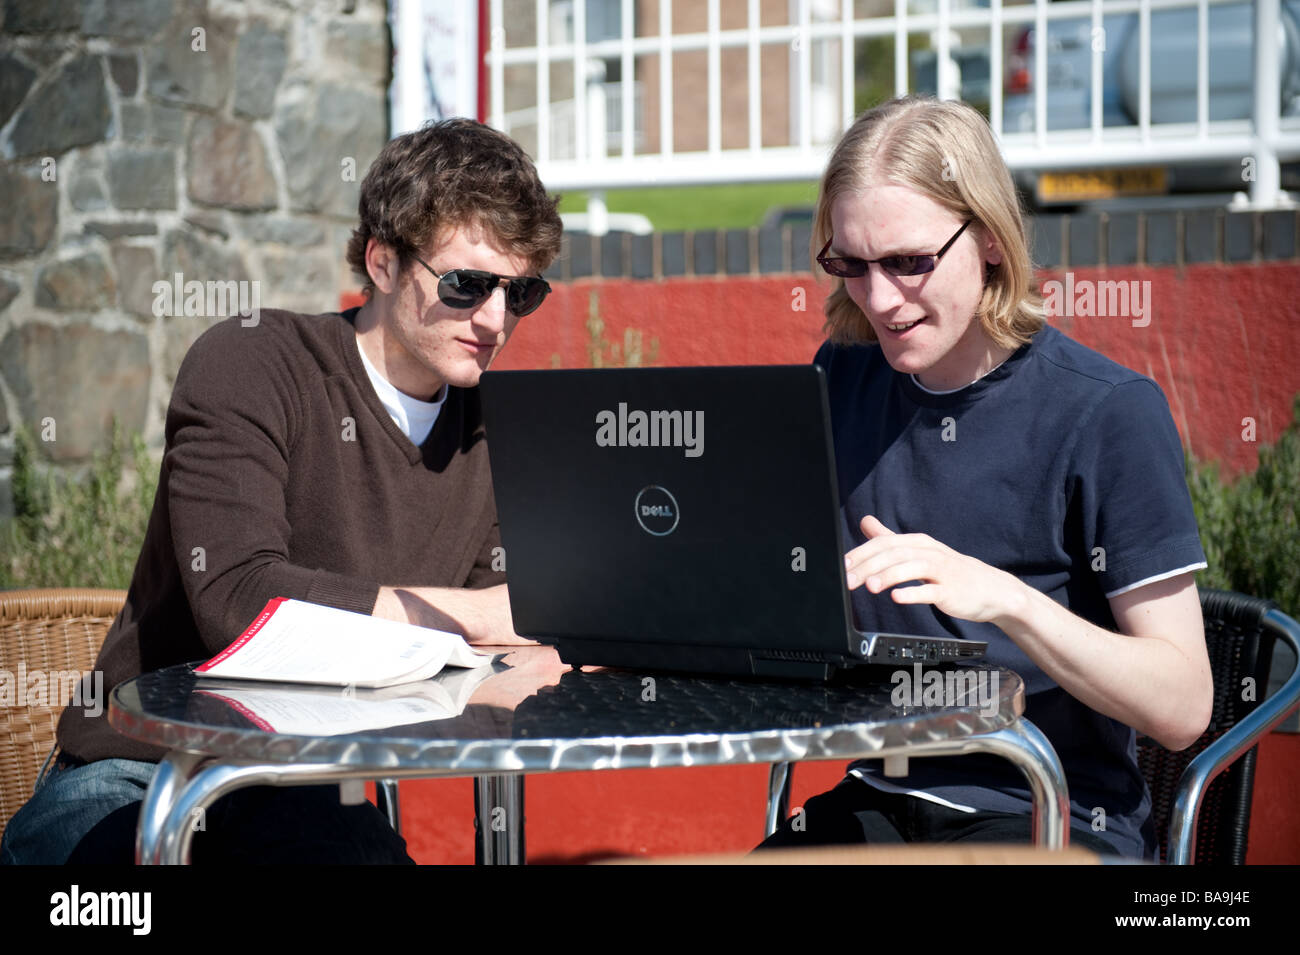 Zwei männliche Studenten an der Aberystwyth University mit einem Laptopcomputer im freien Zugriff auf dem Campus Drahtlosnetzwerk sonnigen Nachmittag Stockfoto